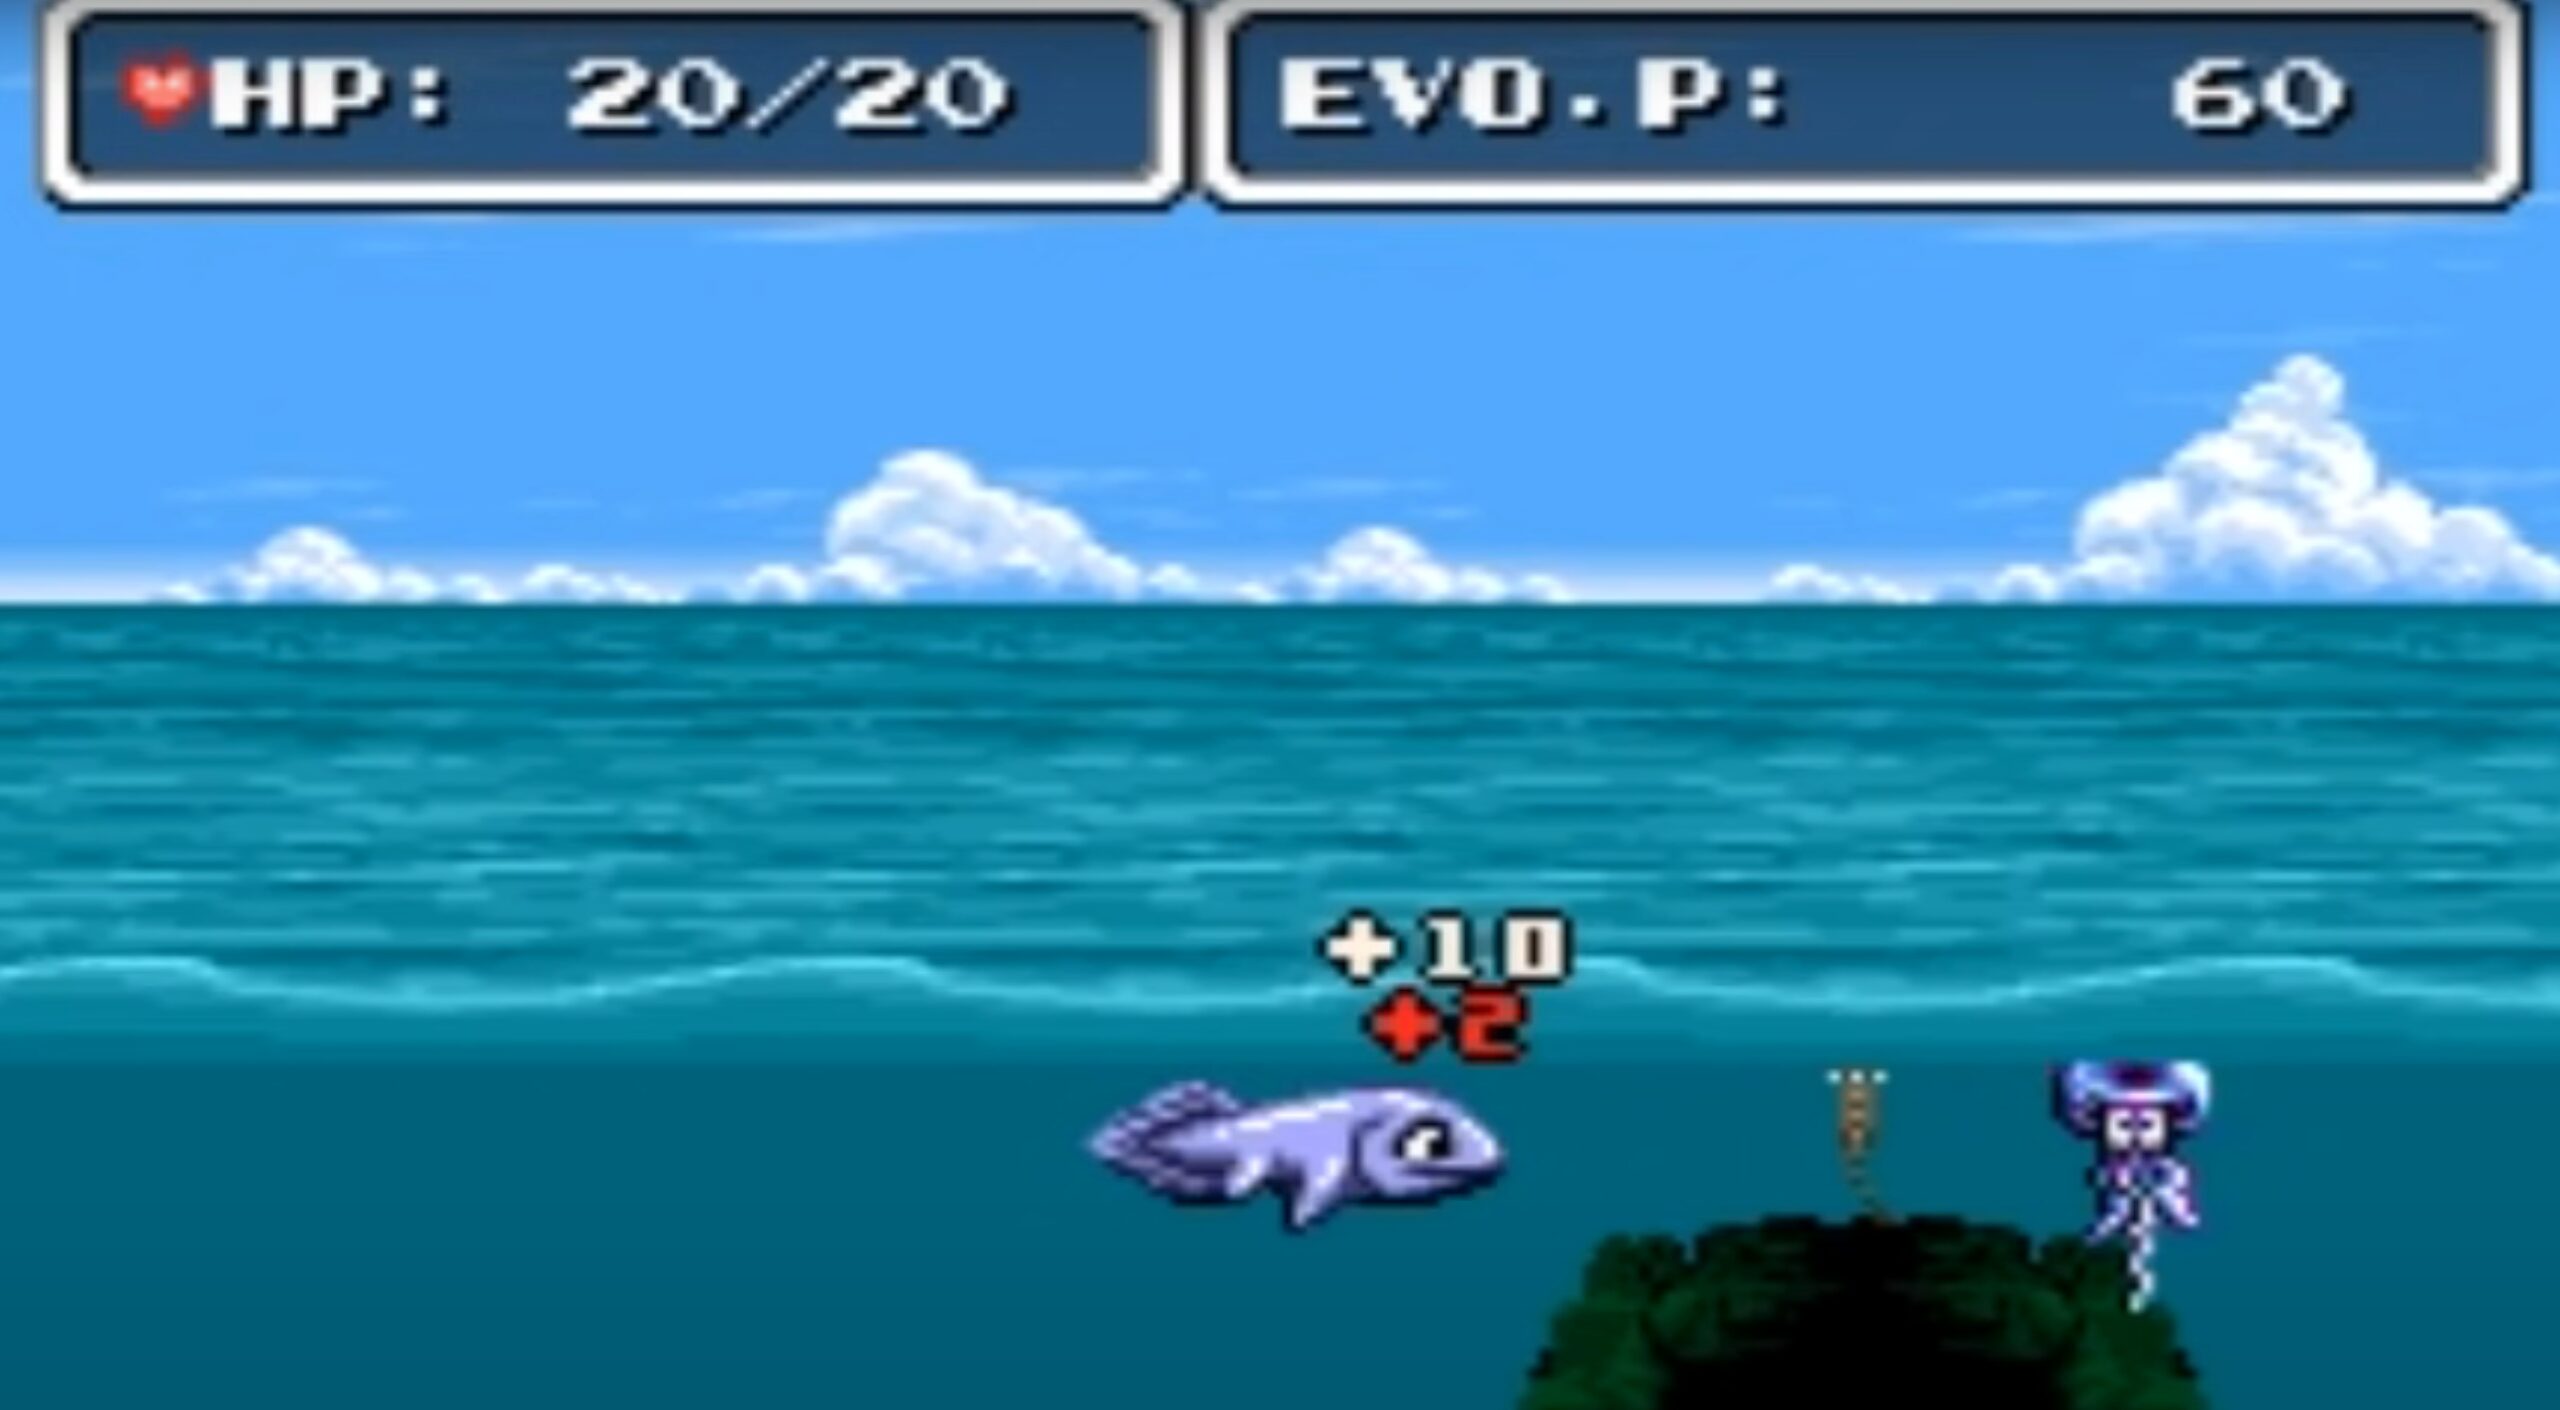 고전 물고기 키우기 게임 : 진화 (1990, 윈도우 98)